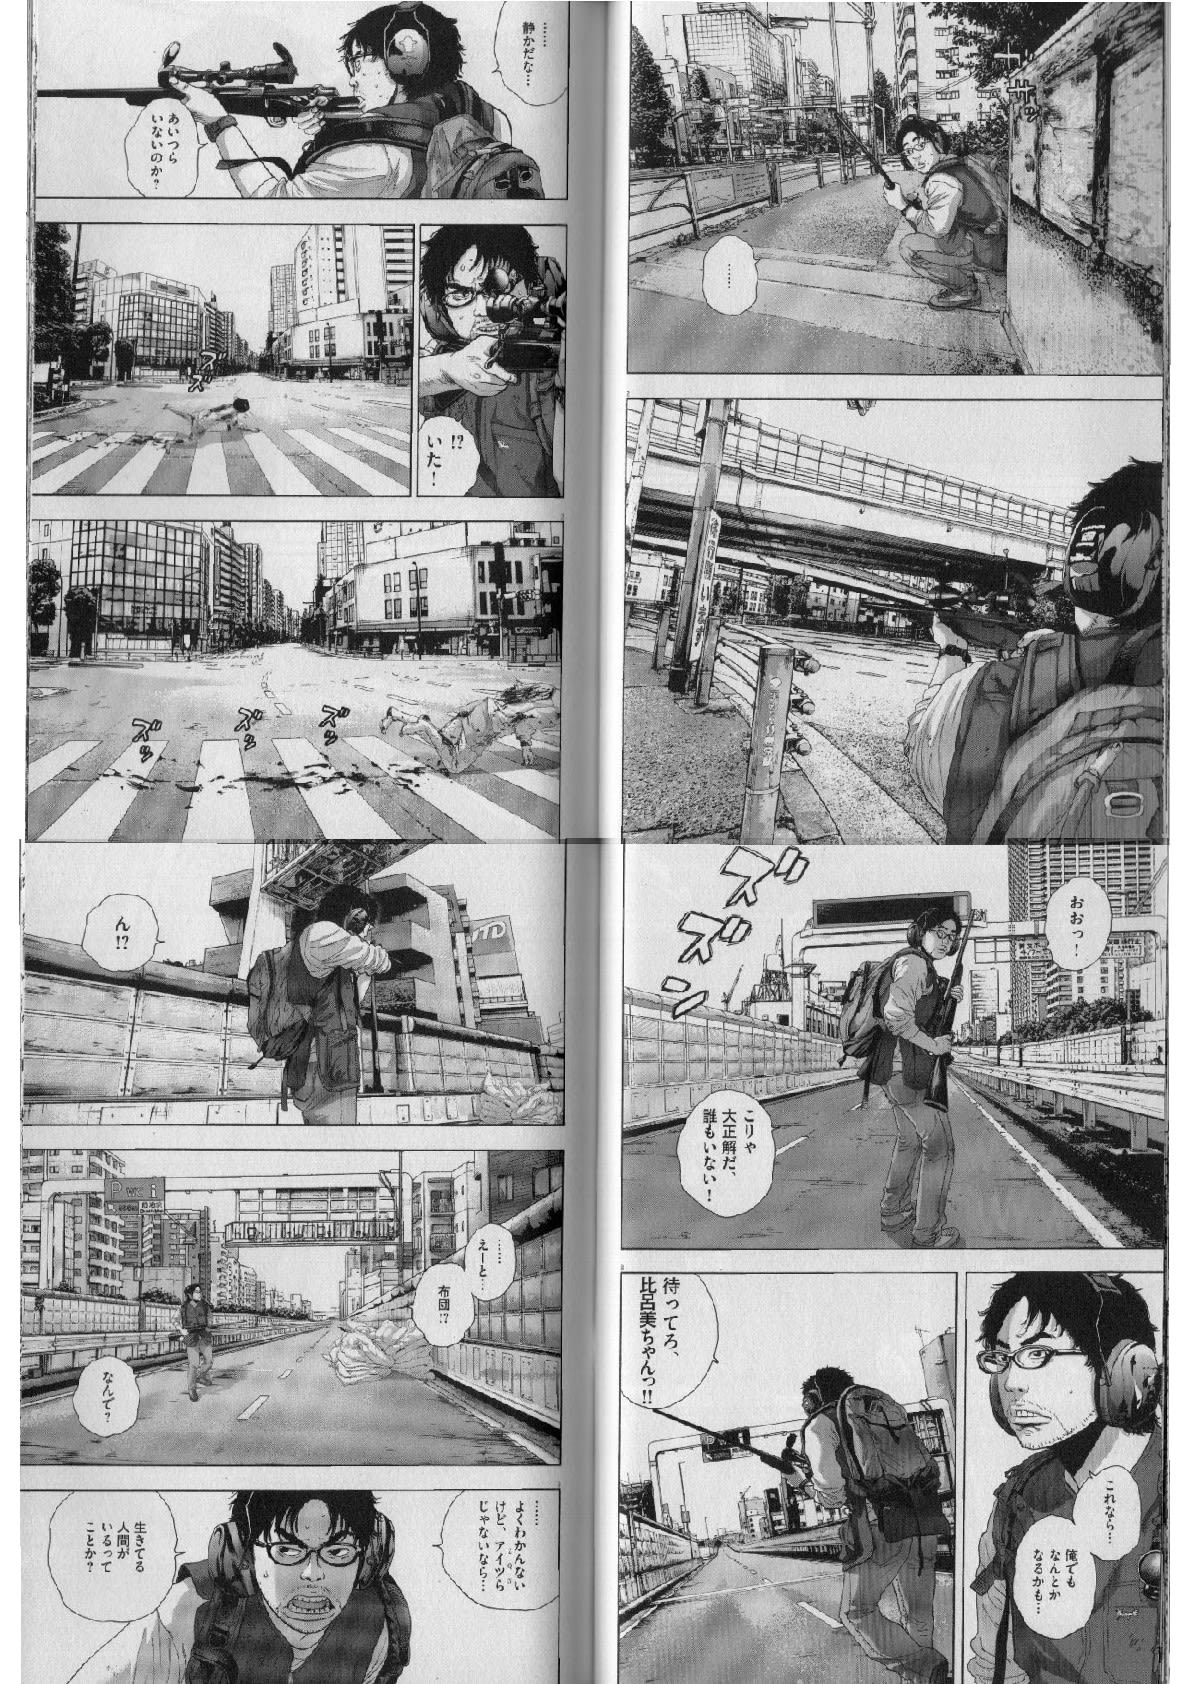 アイアムアヒーロー 誰もいない東京 最終章 個人的に気に入った漫画だったり 書籍だったりを気まぐれで紹介するモトブログおじさん